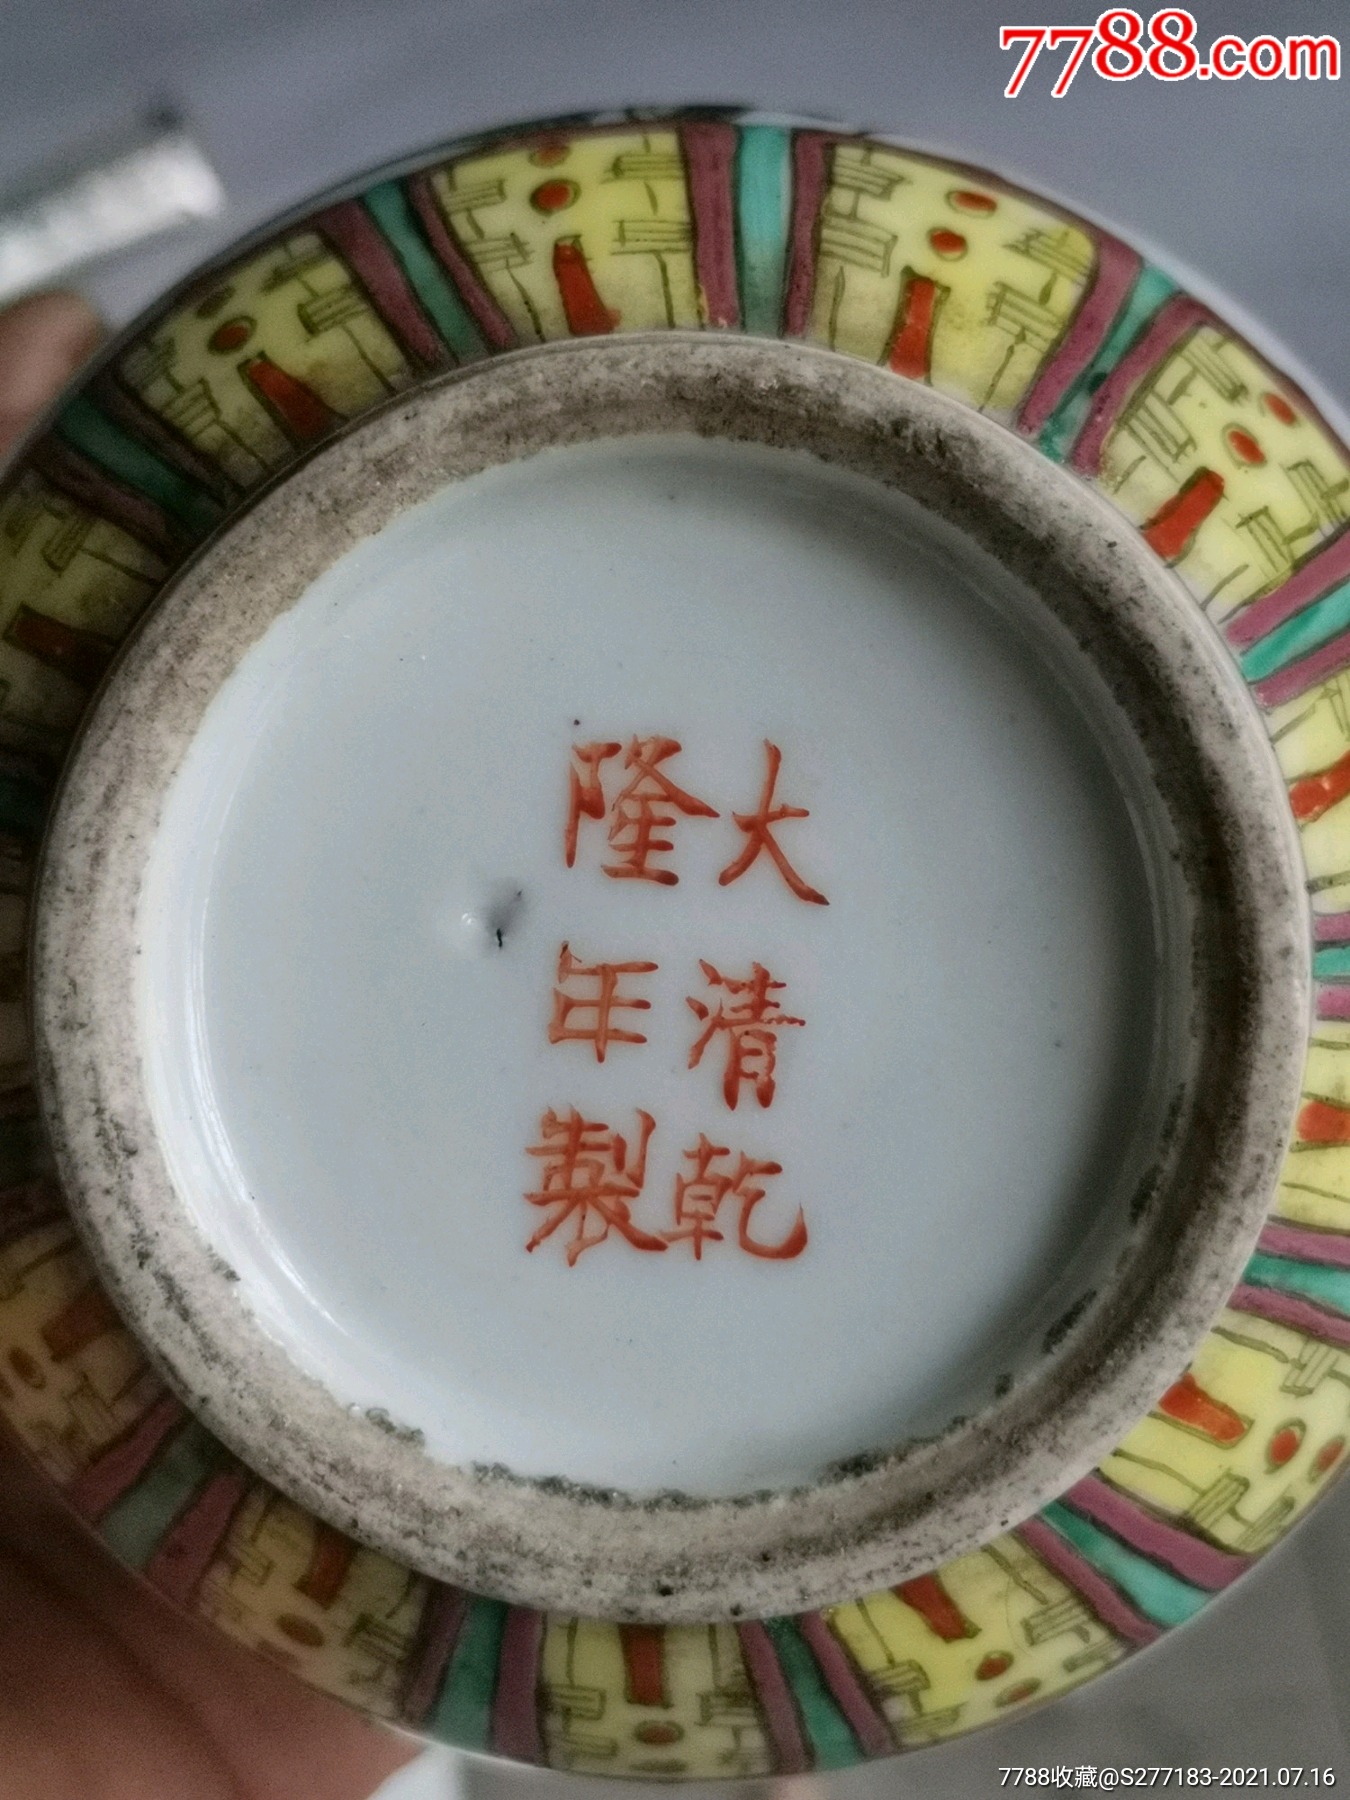 大清乾隆年制官窑款花卉图案瓷茶壶一个,画工精致漂亮